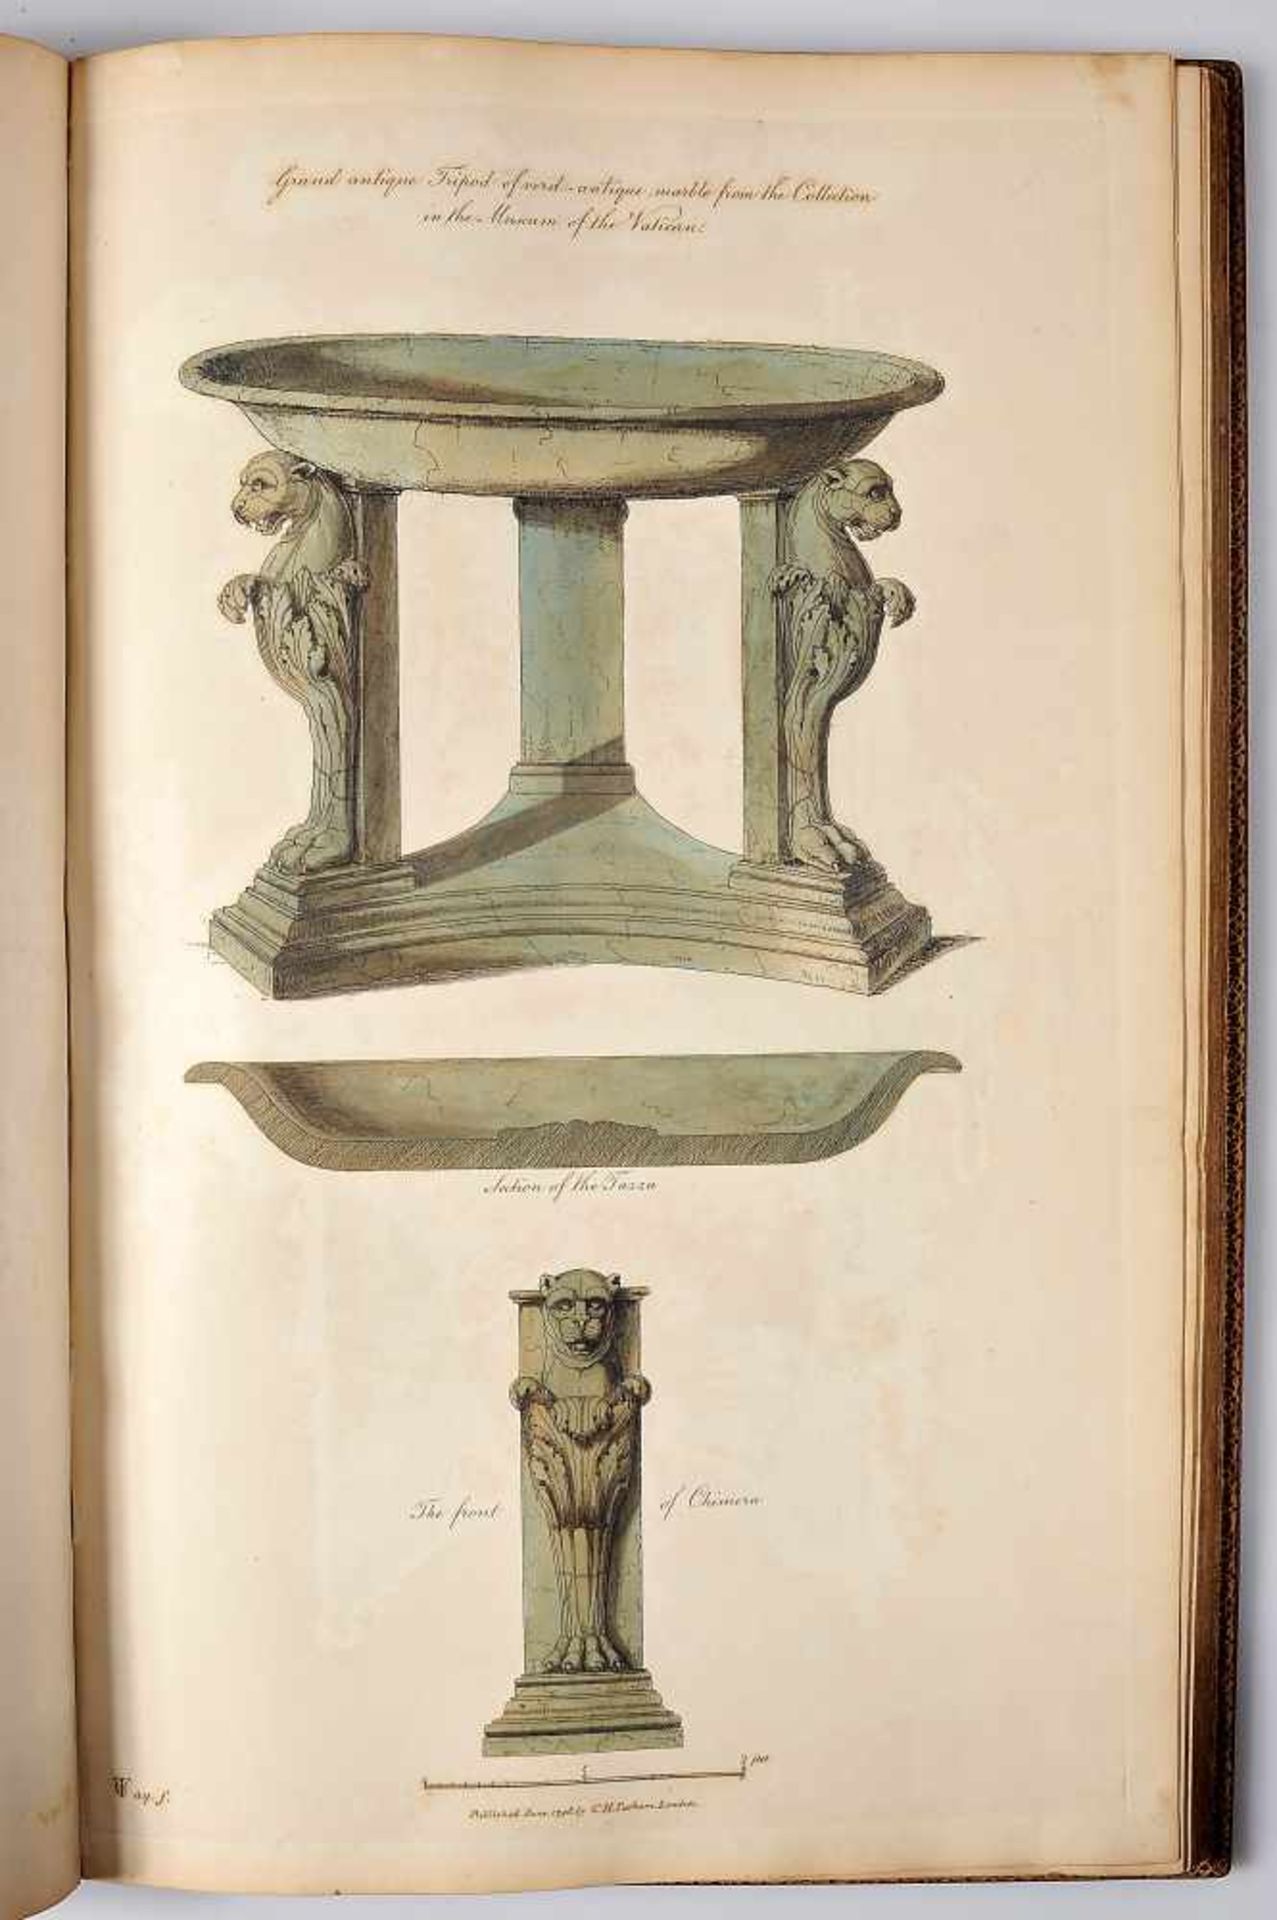 CHARLES HEATHCOTE TATHAM - 1772-1842, Ancient ornamental architecture, de Charles Tatham, 1799, - Bild 3 aus 4